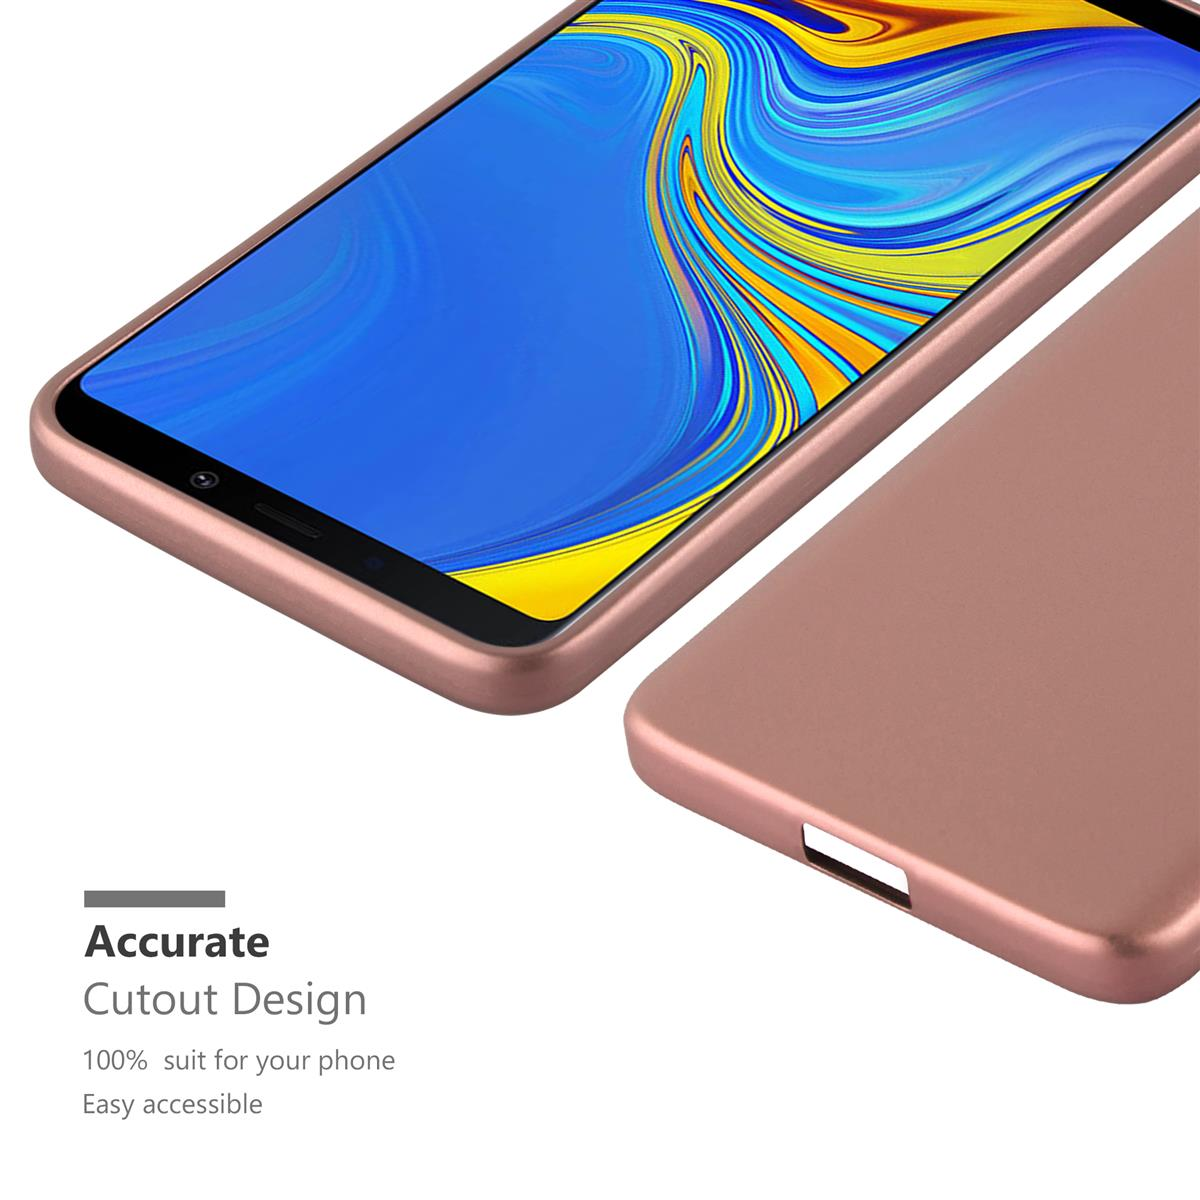 CADORABO TPU 2018, Galaxy METALLIC Samsung, A9 Backcover, Hülle, Metallic ROSÉ GOLD Matt